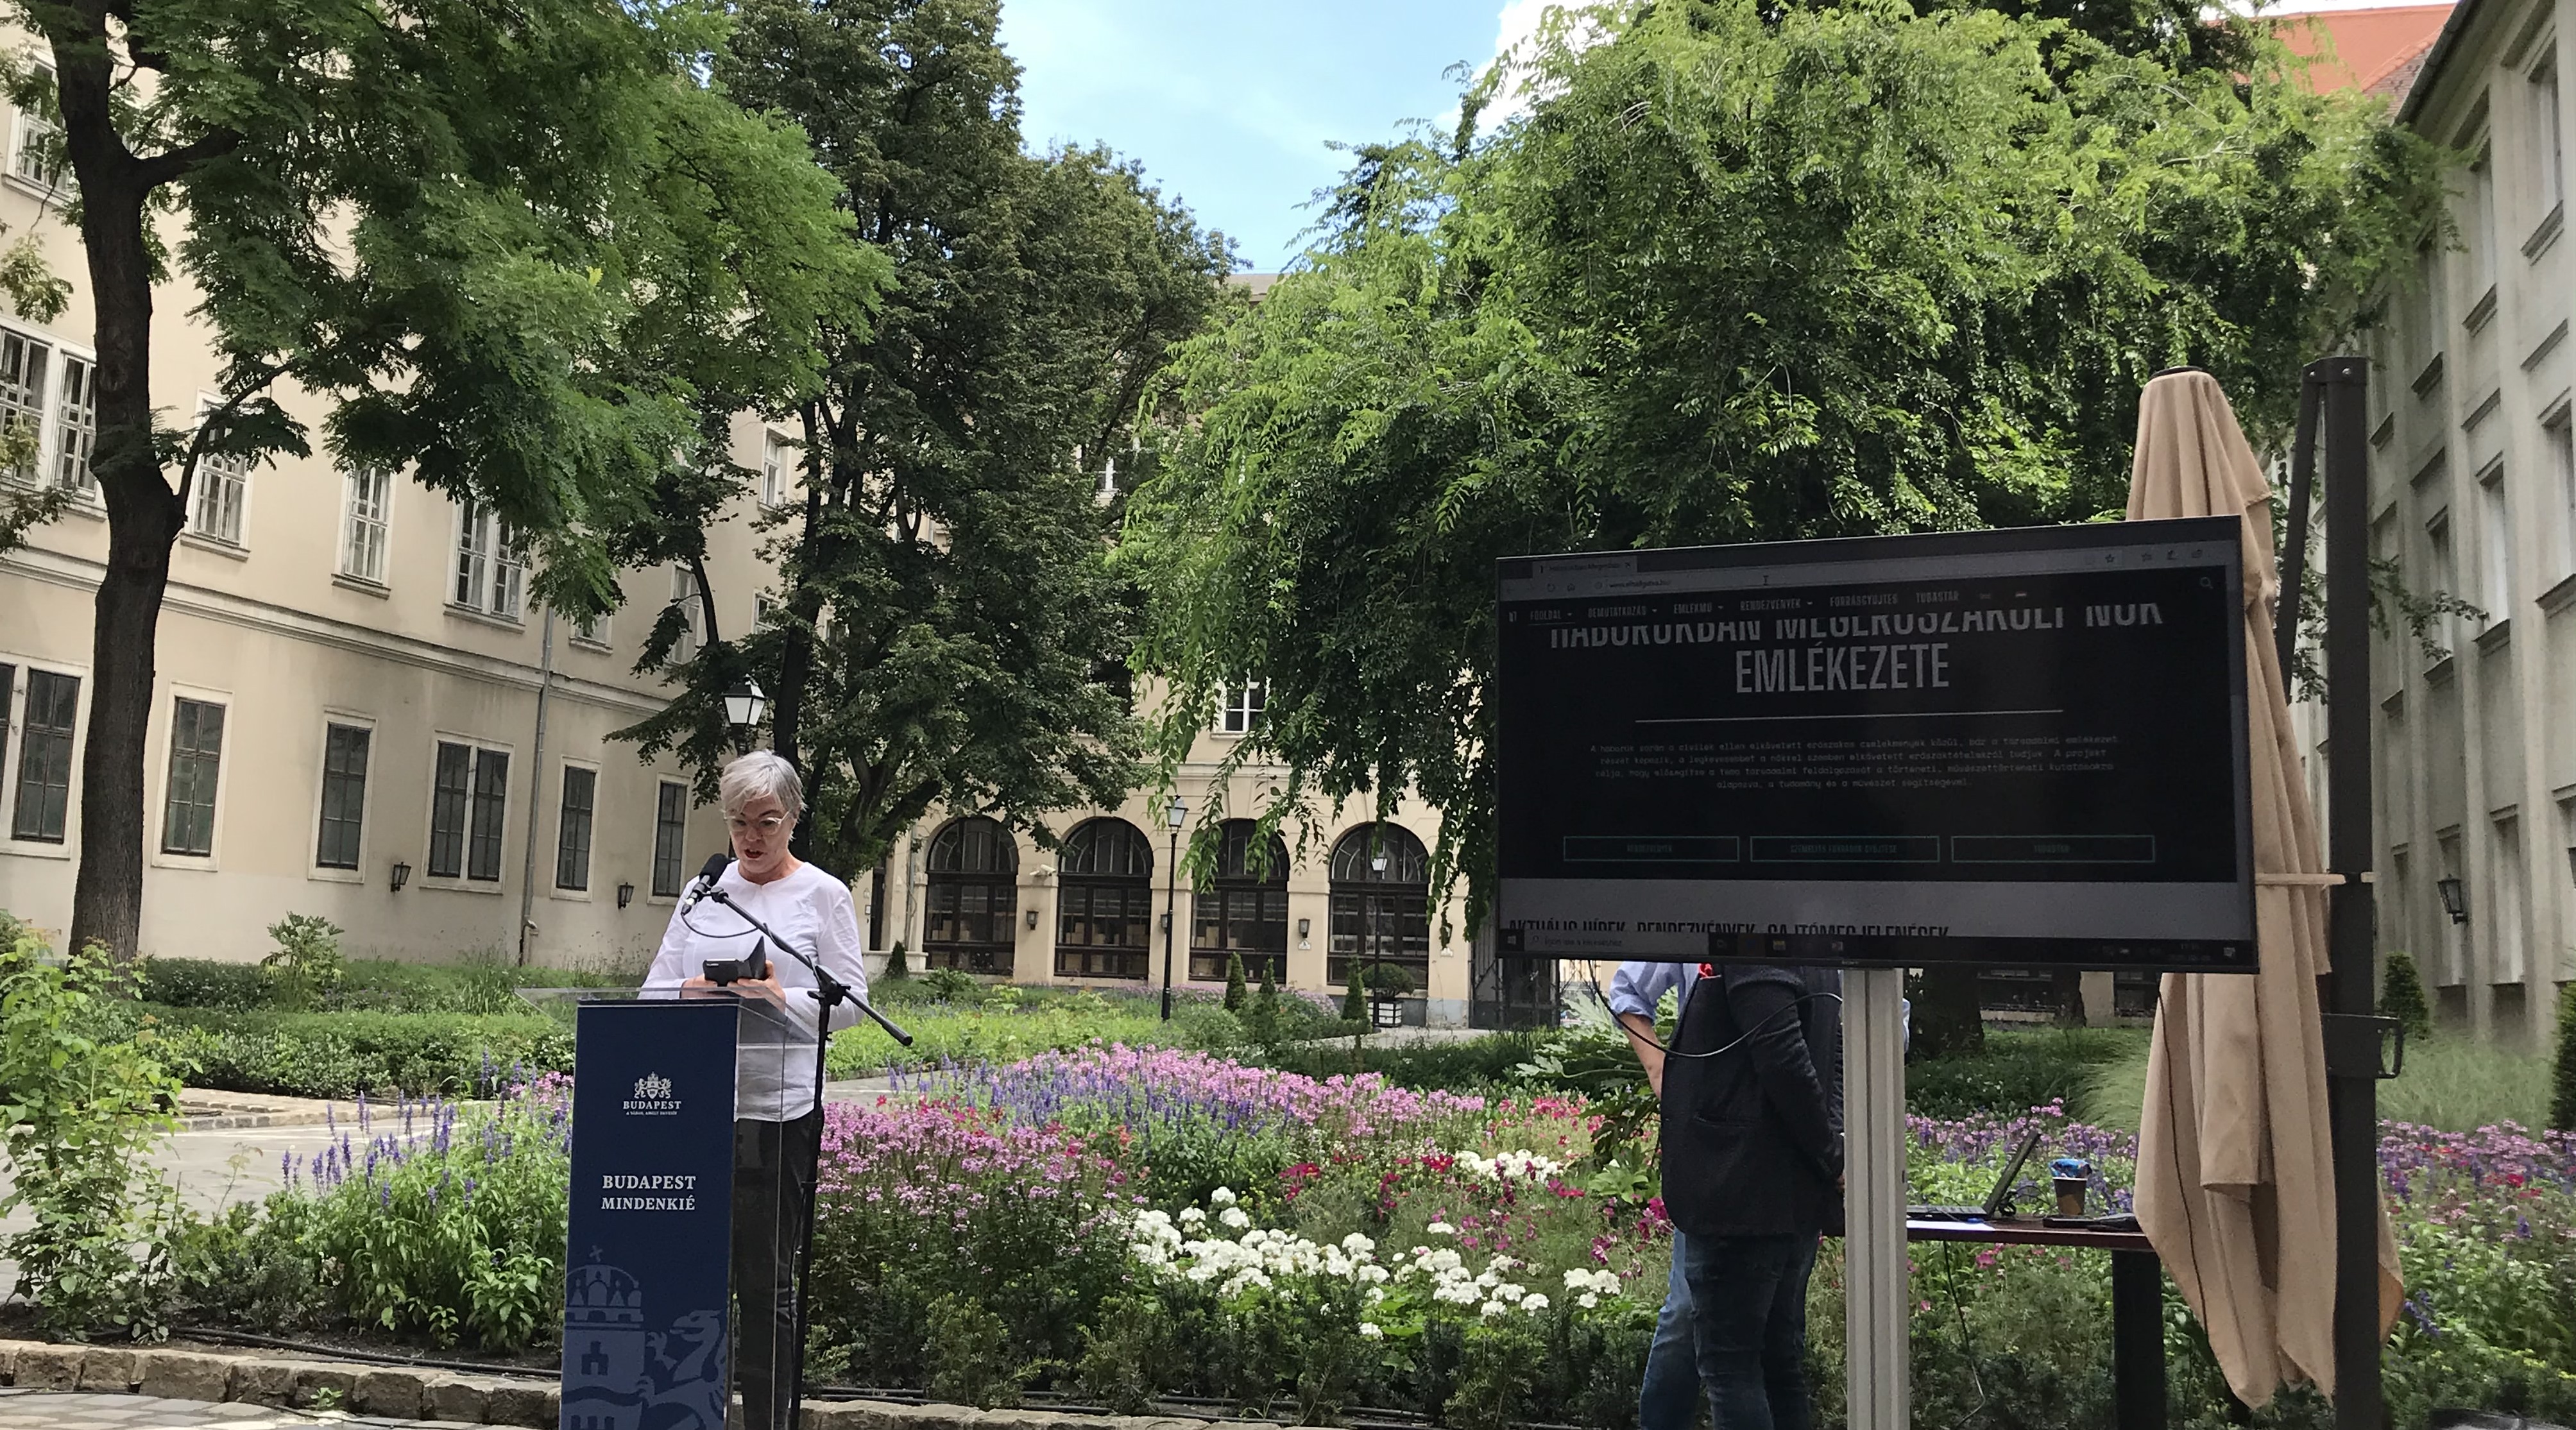 Megdöbbentő: nem önhatalmúlag, hanem hosszadalmas egyeztetés, átbeszélés után állítanak emlékművet Budapesten